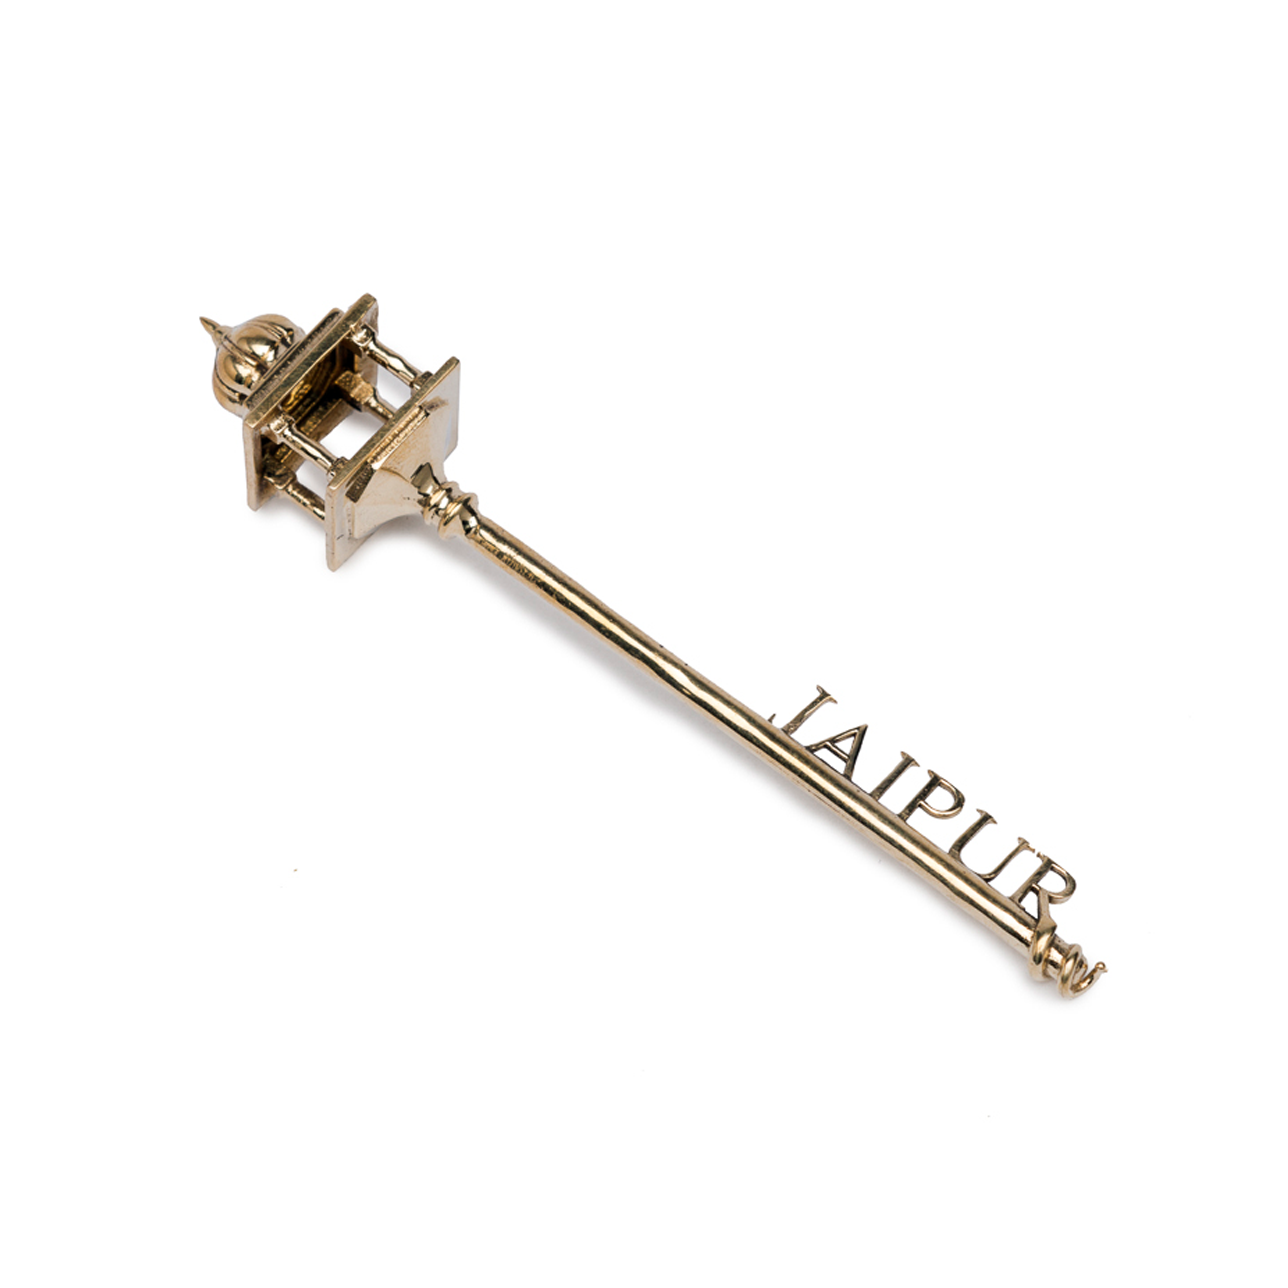 Key to Jaipur